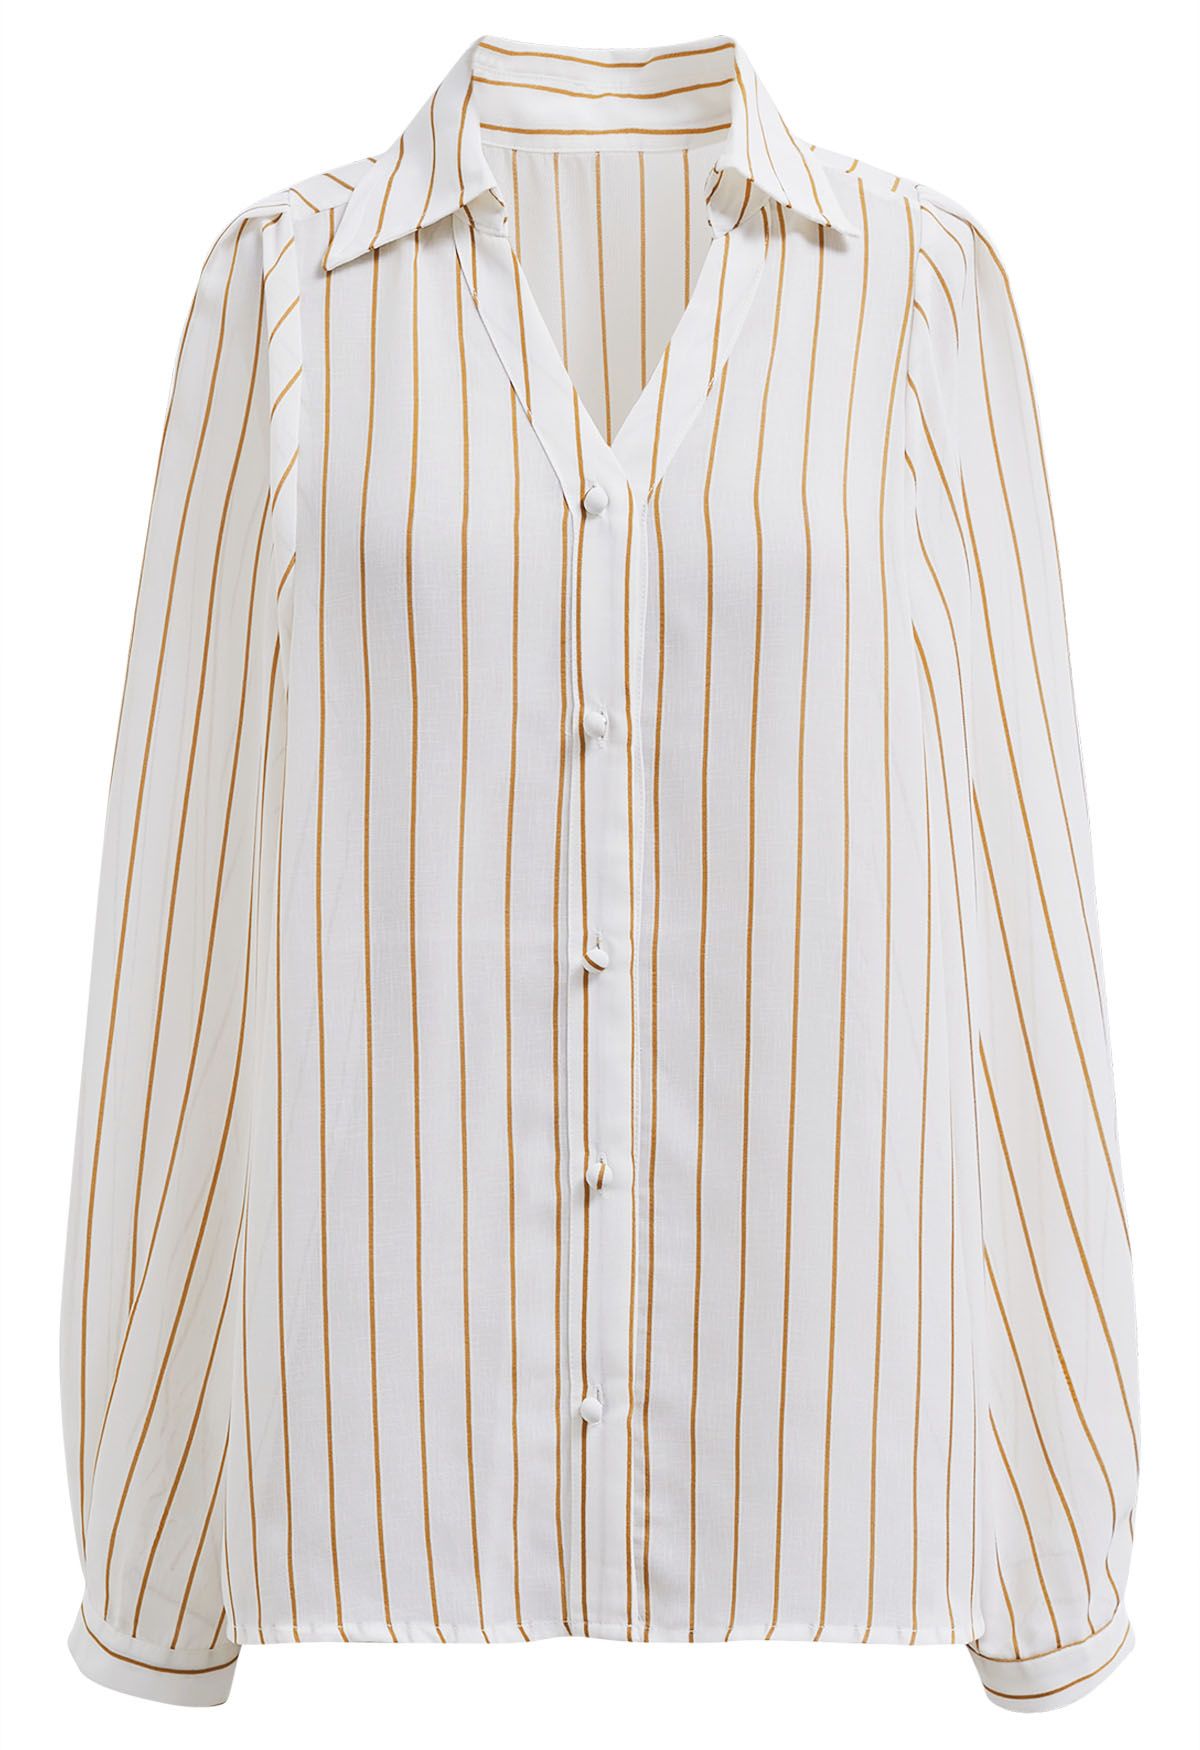 Brown Vertical Stripes Button Down Shirt